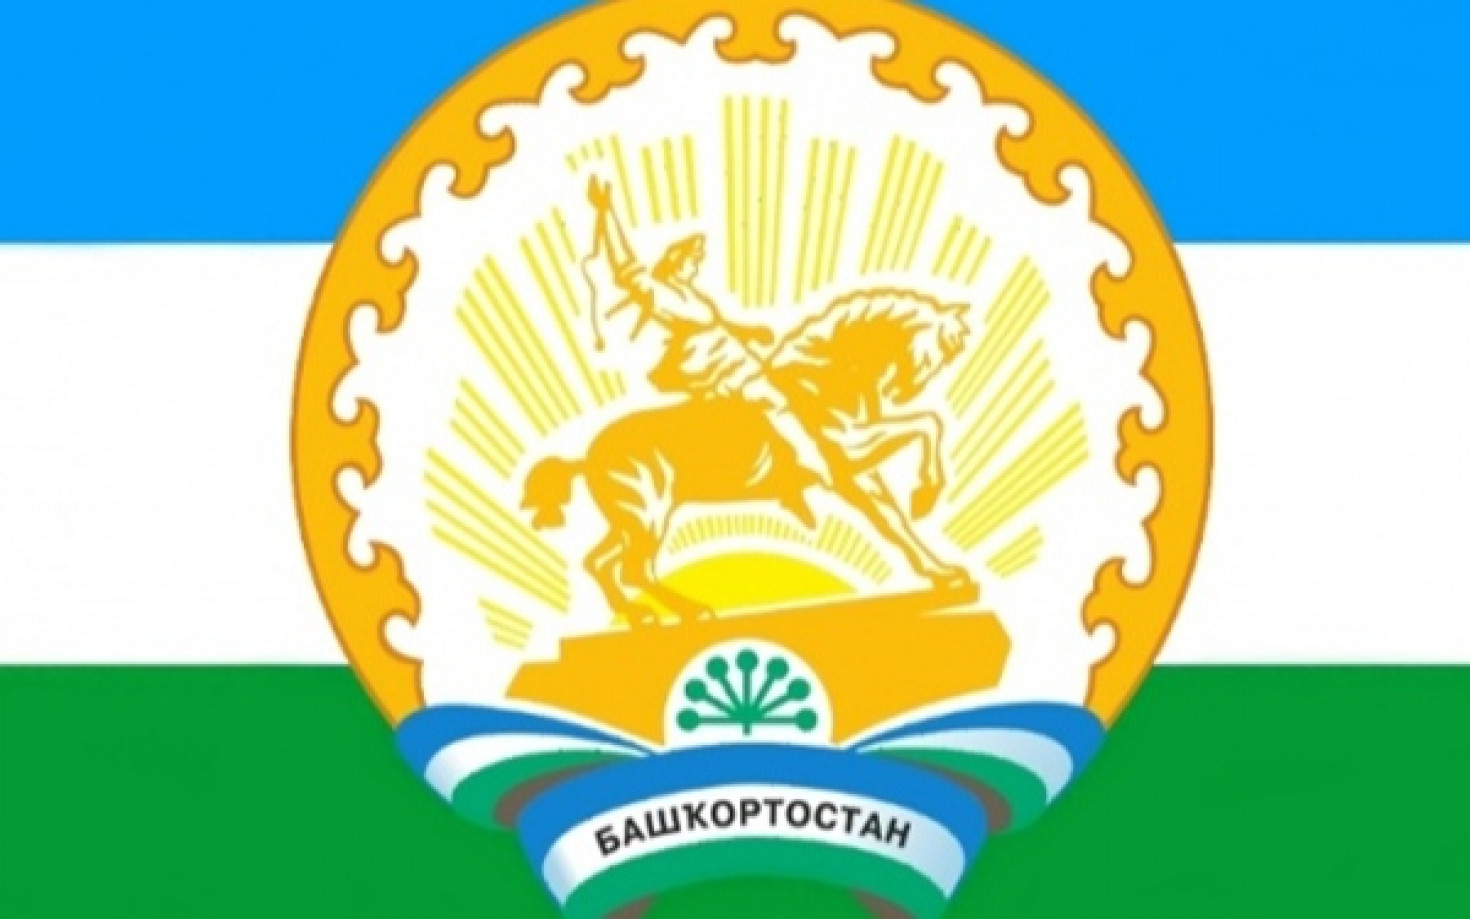 В Закон «О развитии малого и среднего предпринимательства в Республике Башкортостан» предлагается внести изменения